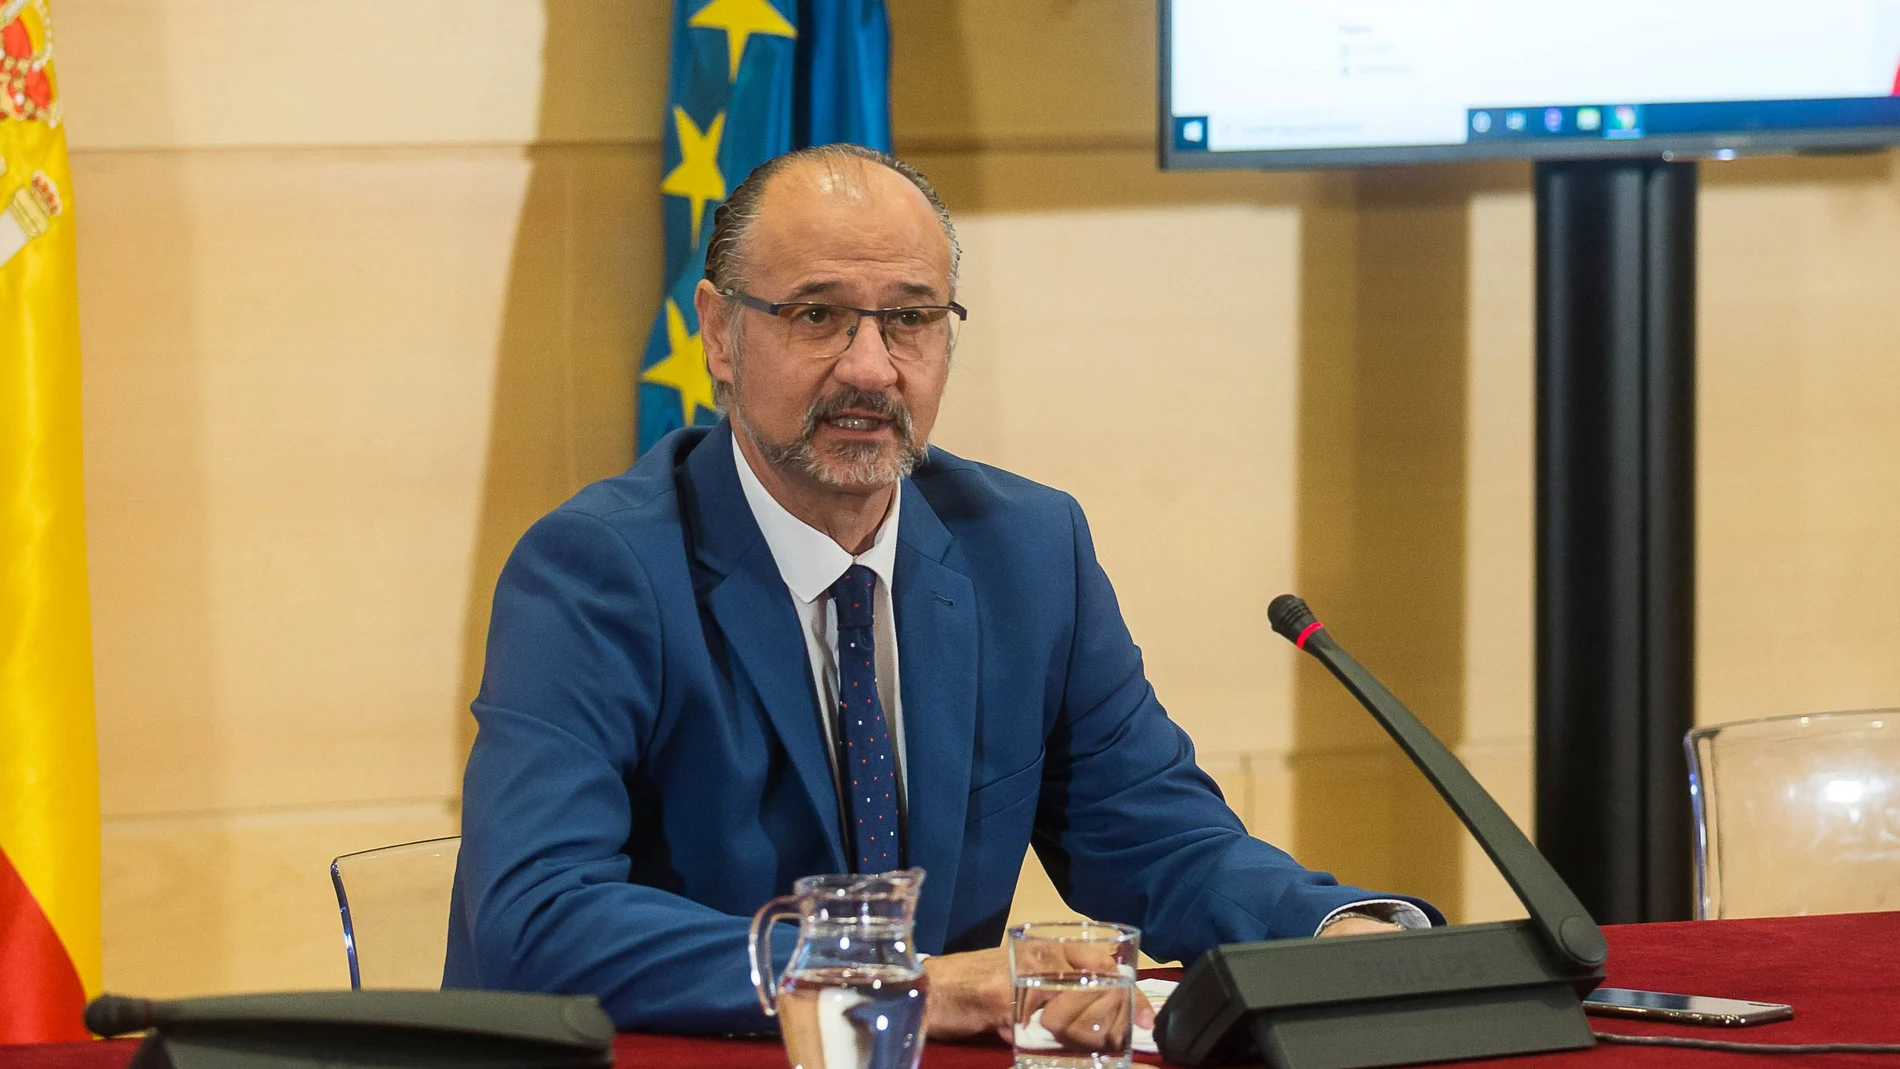 El presidente de las Cortes de Castilla y León, Luis Fuentes, ofrece una rueda de prensa para abordar diferentes medidas de transparencia y modernización de la institución